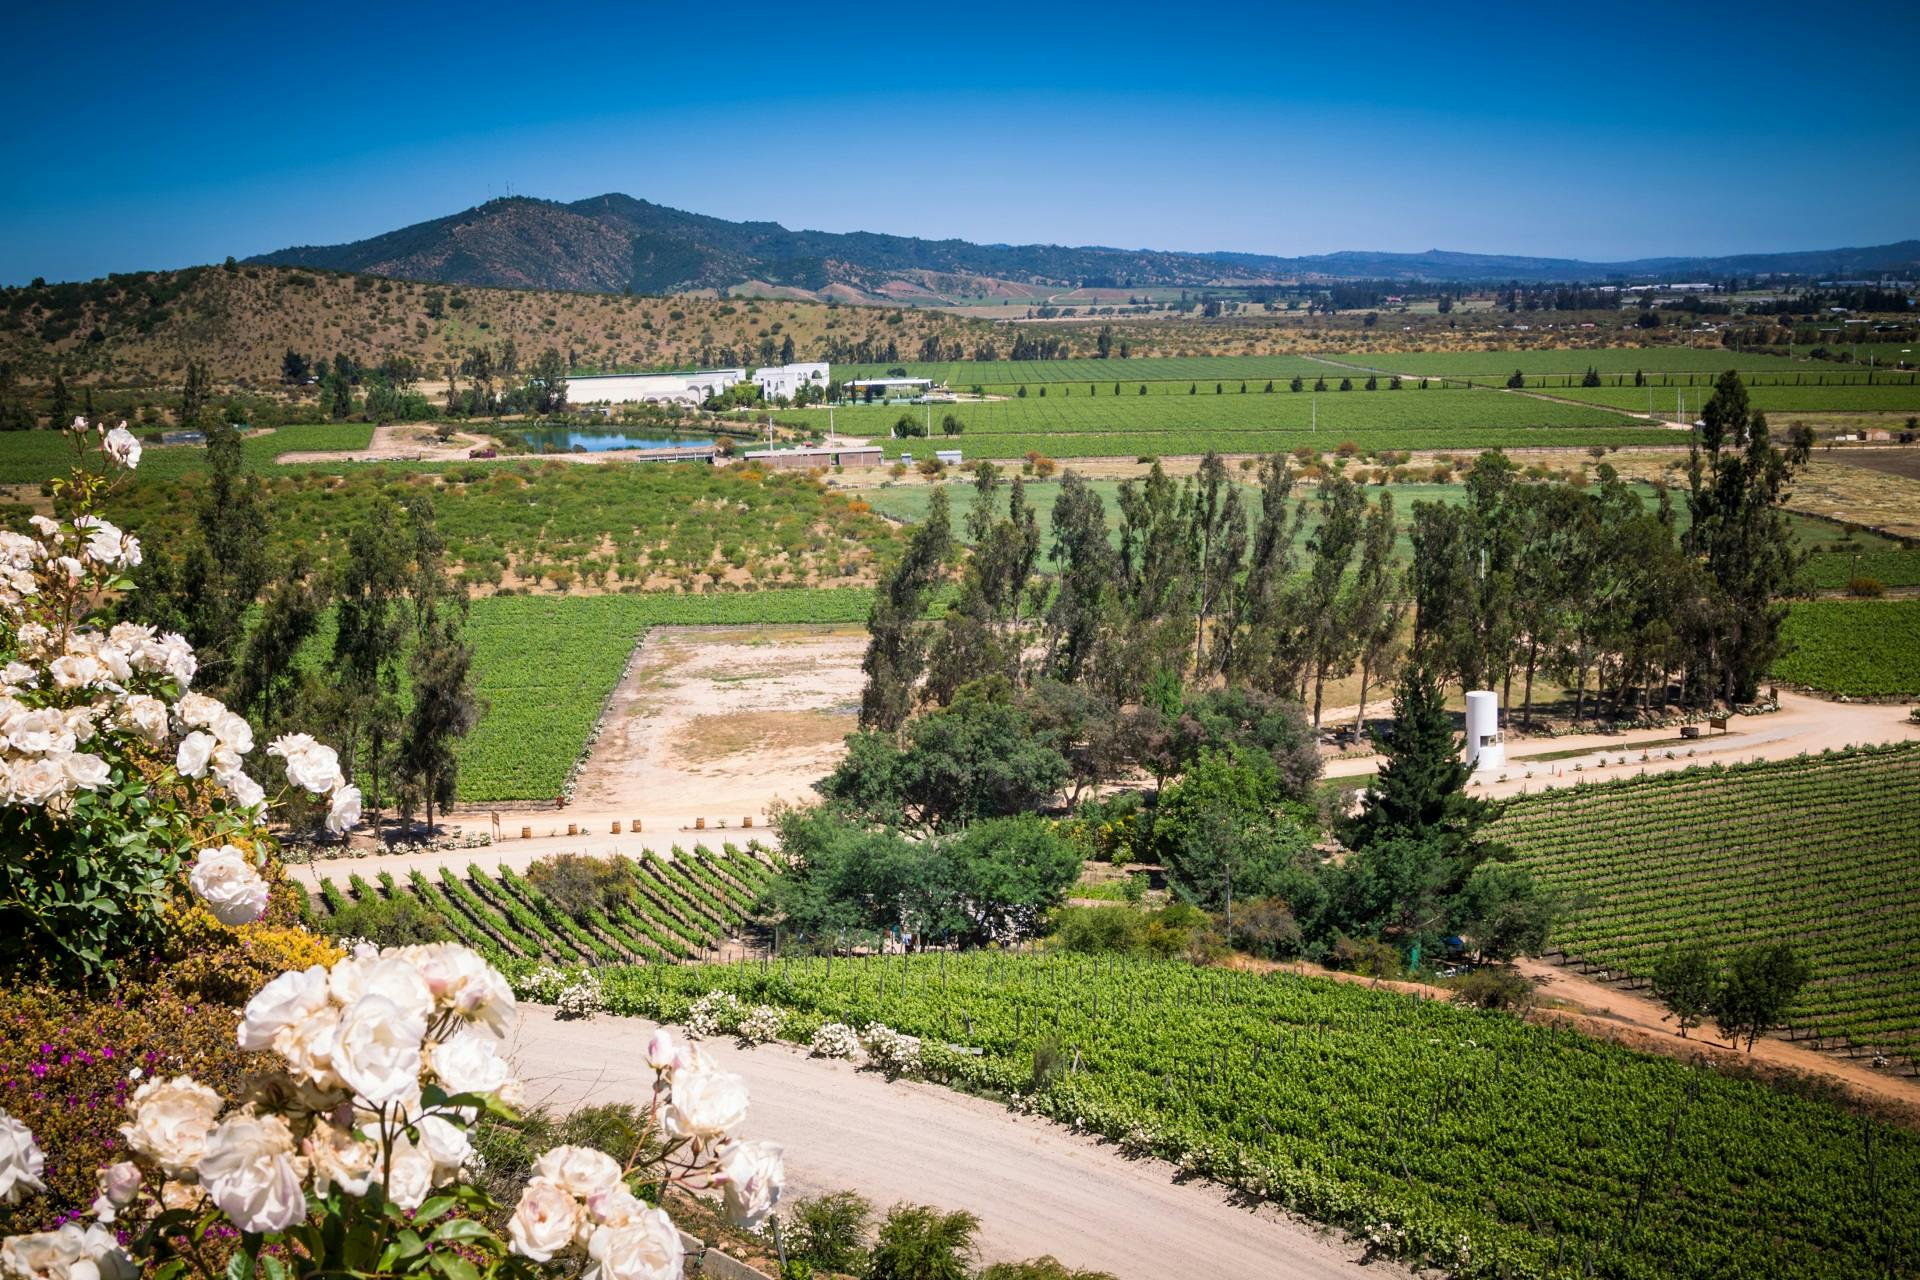 Rondleiding door Casablanca Valley en Matetic Vineyards met wijnproeverij